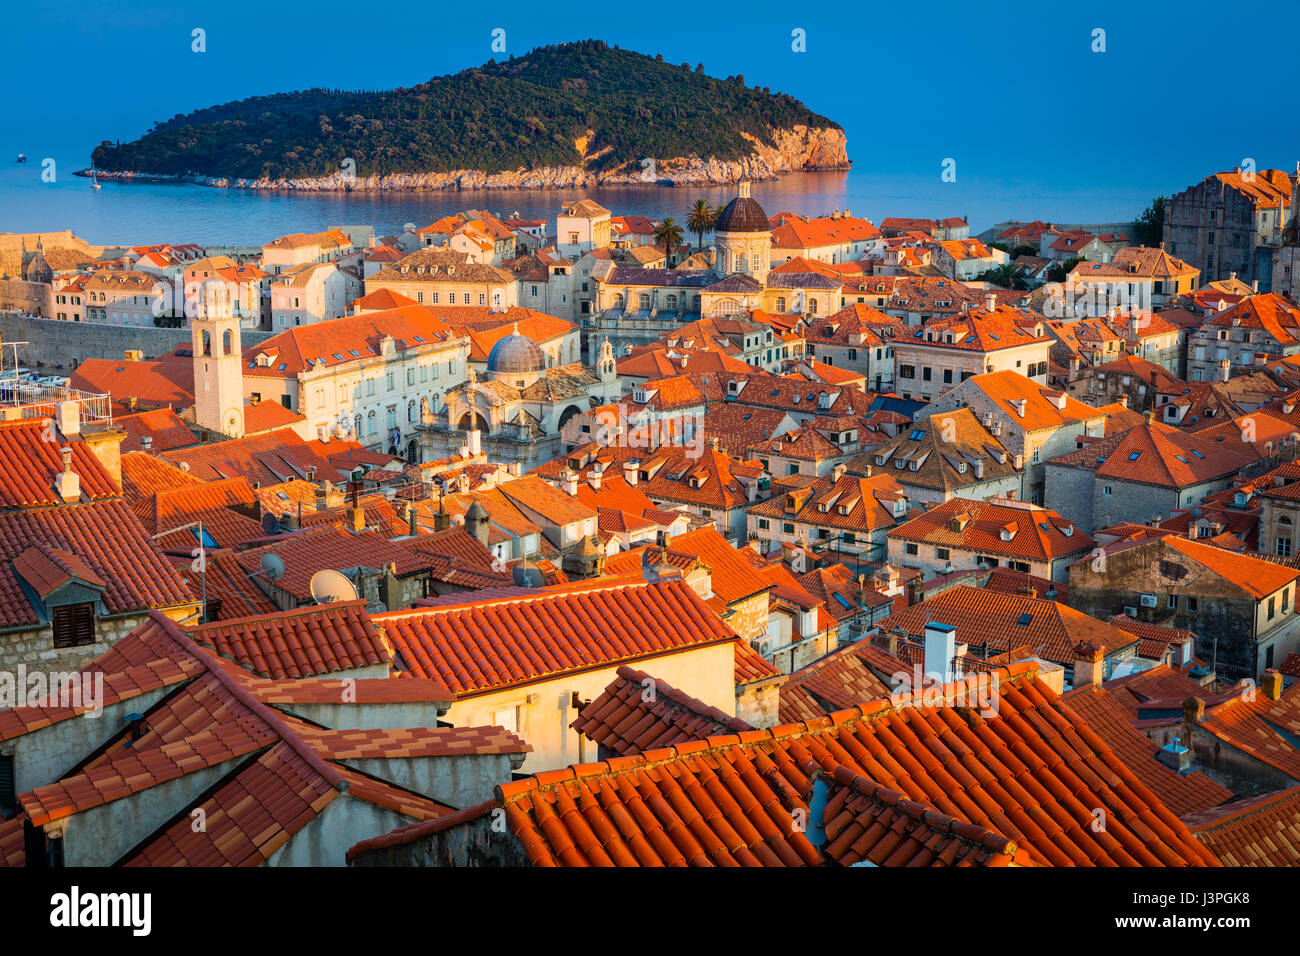 Dubrovnik, Croatie, avec sa caractéristique de la ville médiévale. Dubrovnik est une ville croate sur l'Adriatique, dans la région de la Dalmatie. C'est sur Banque D'Images